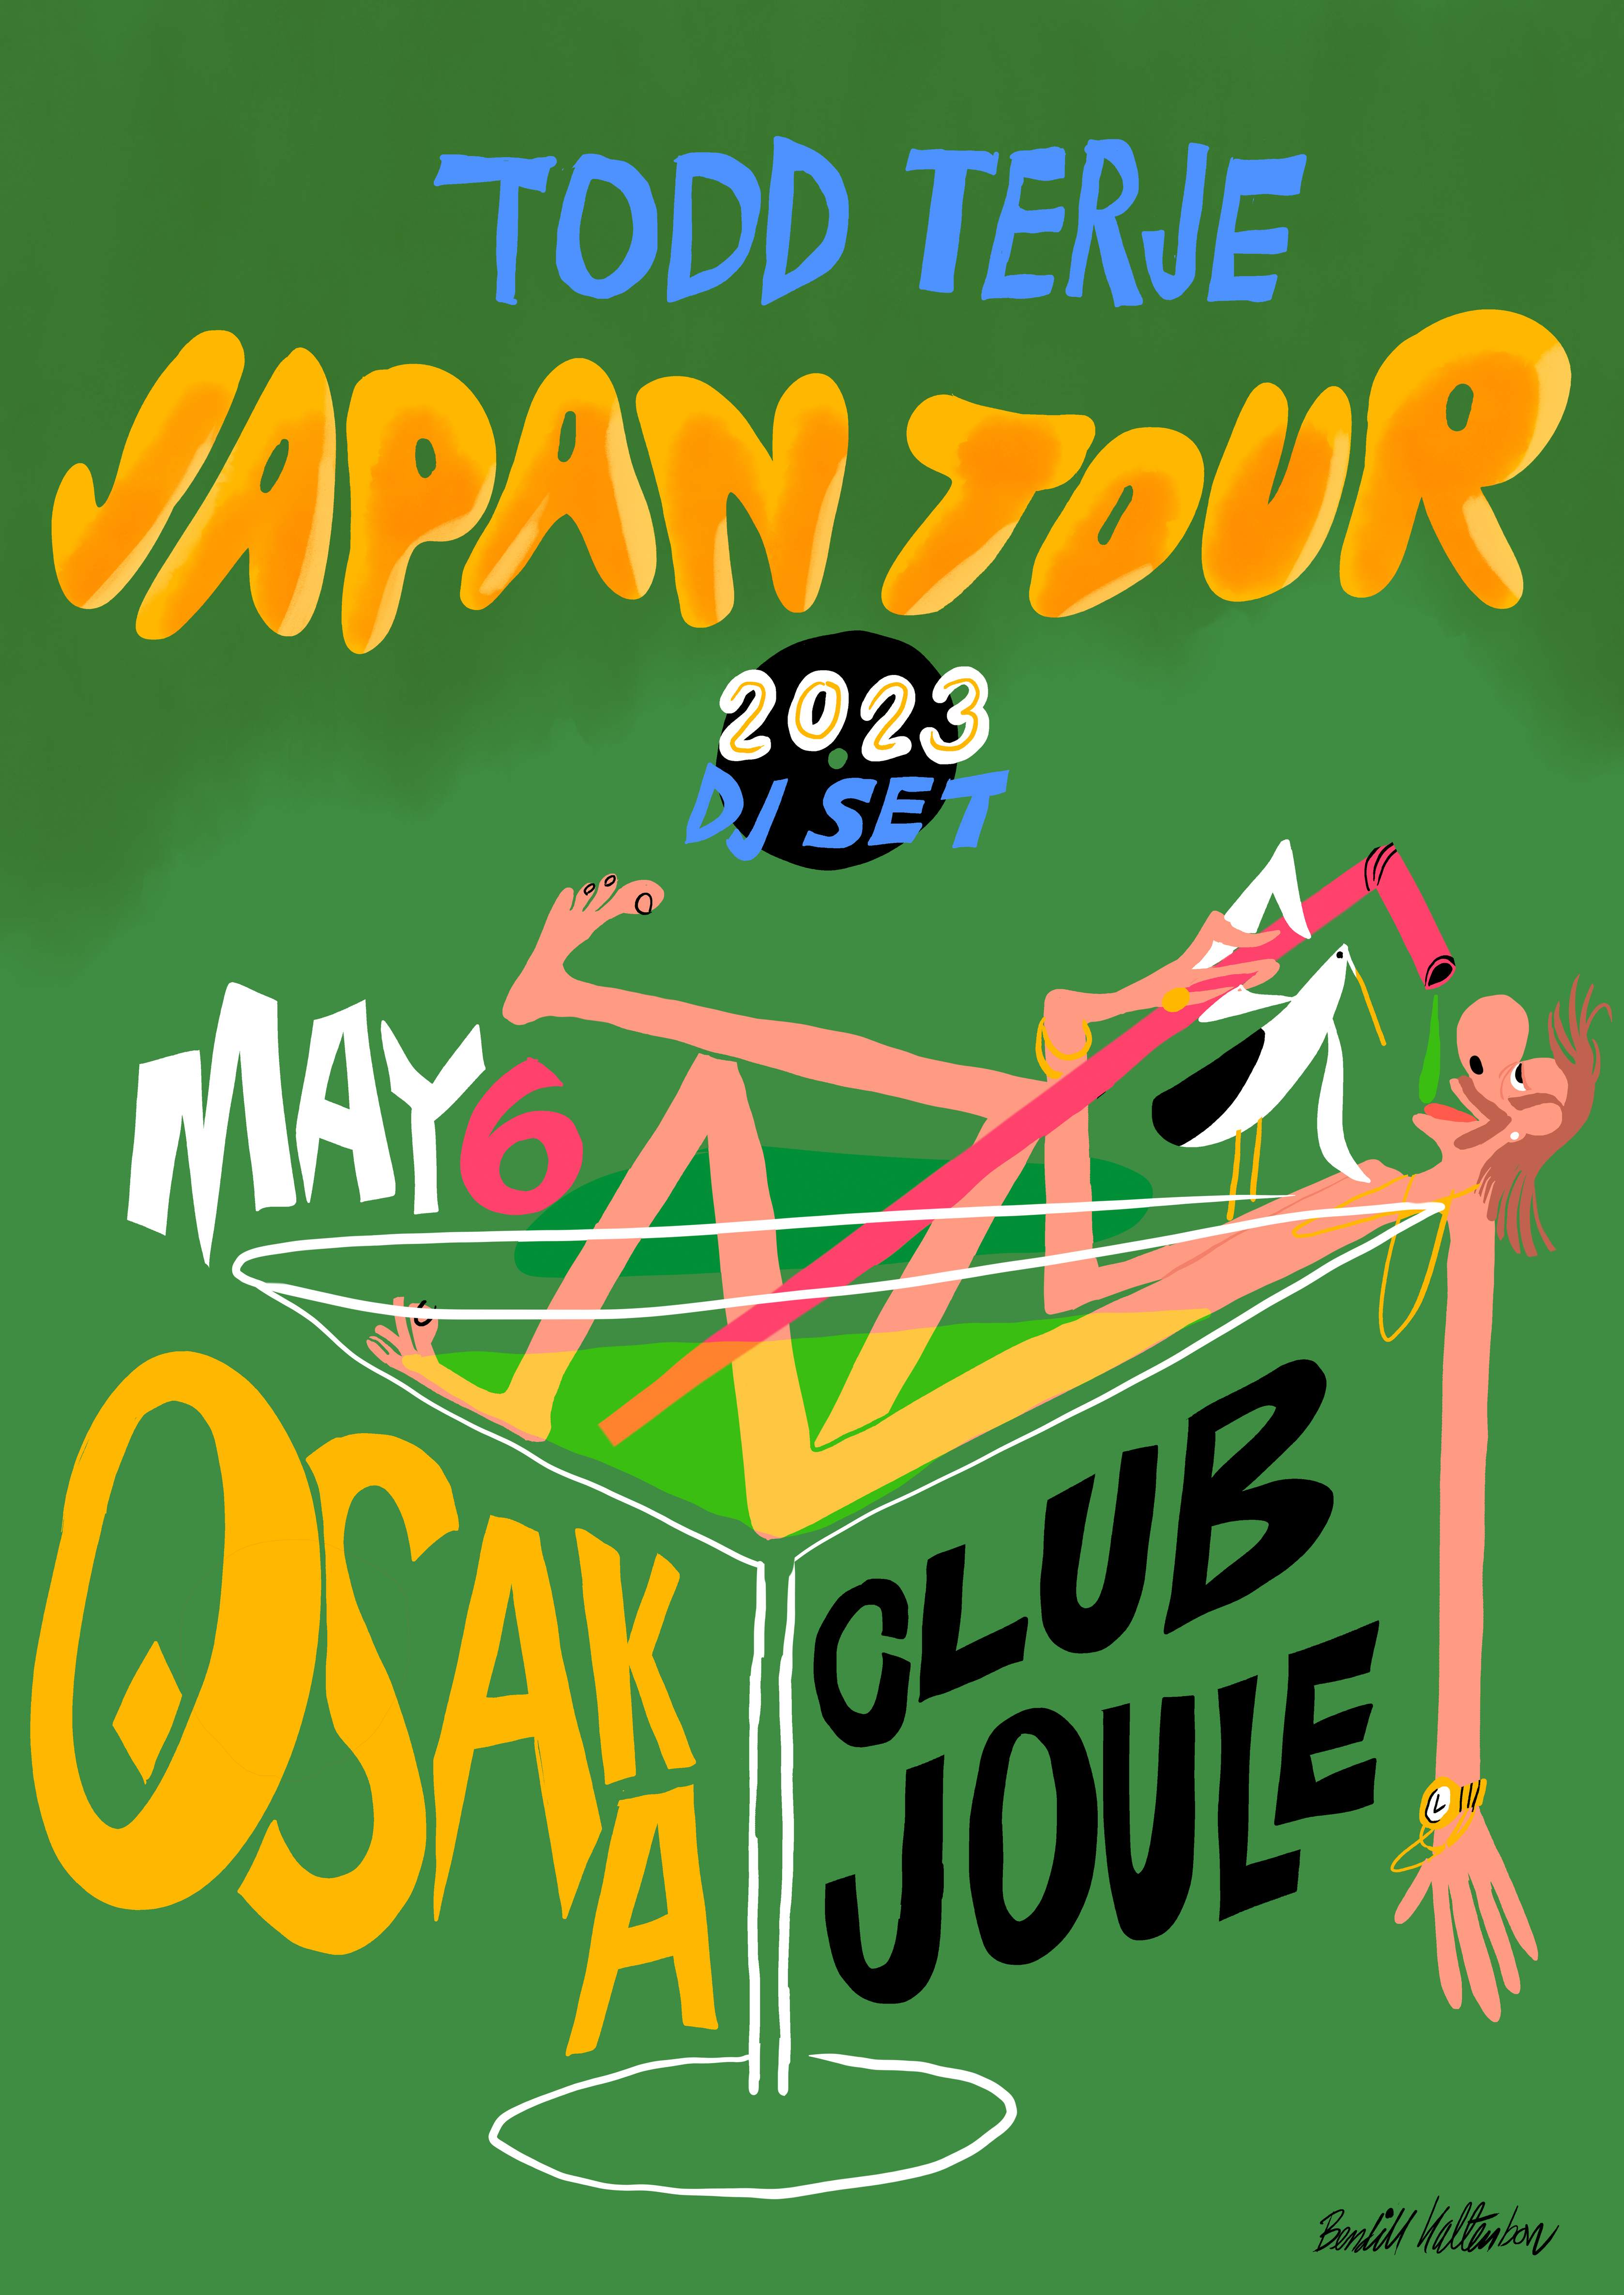 Todd Terje Japan Tour 2023 - Página frontal